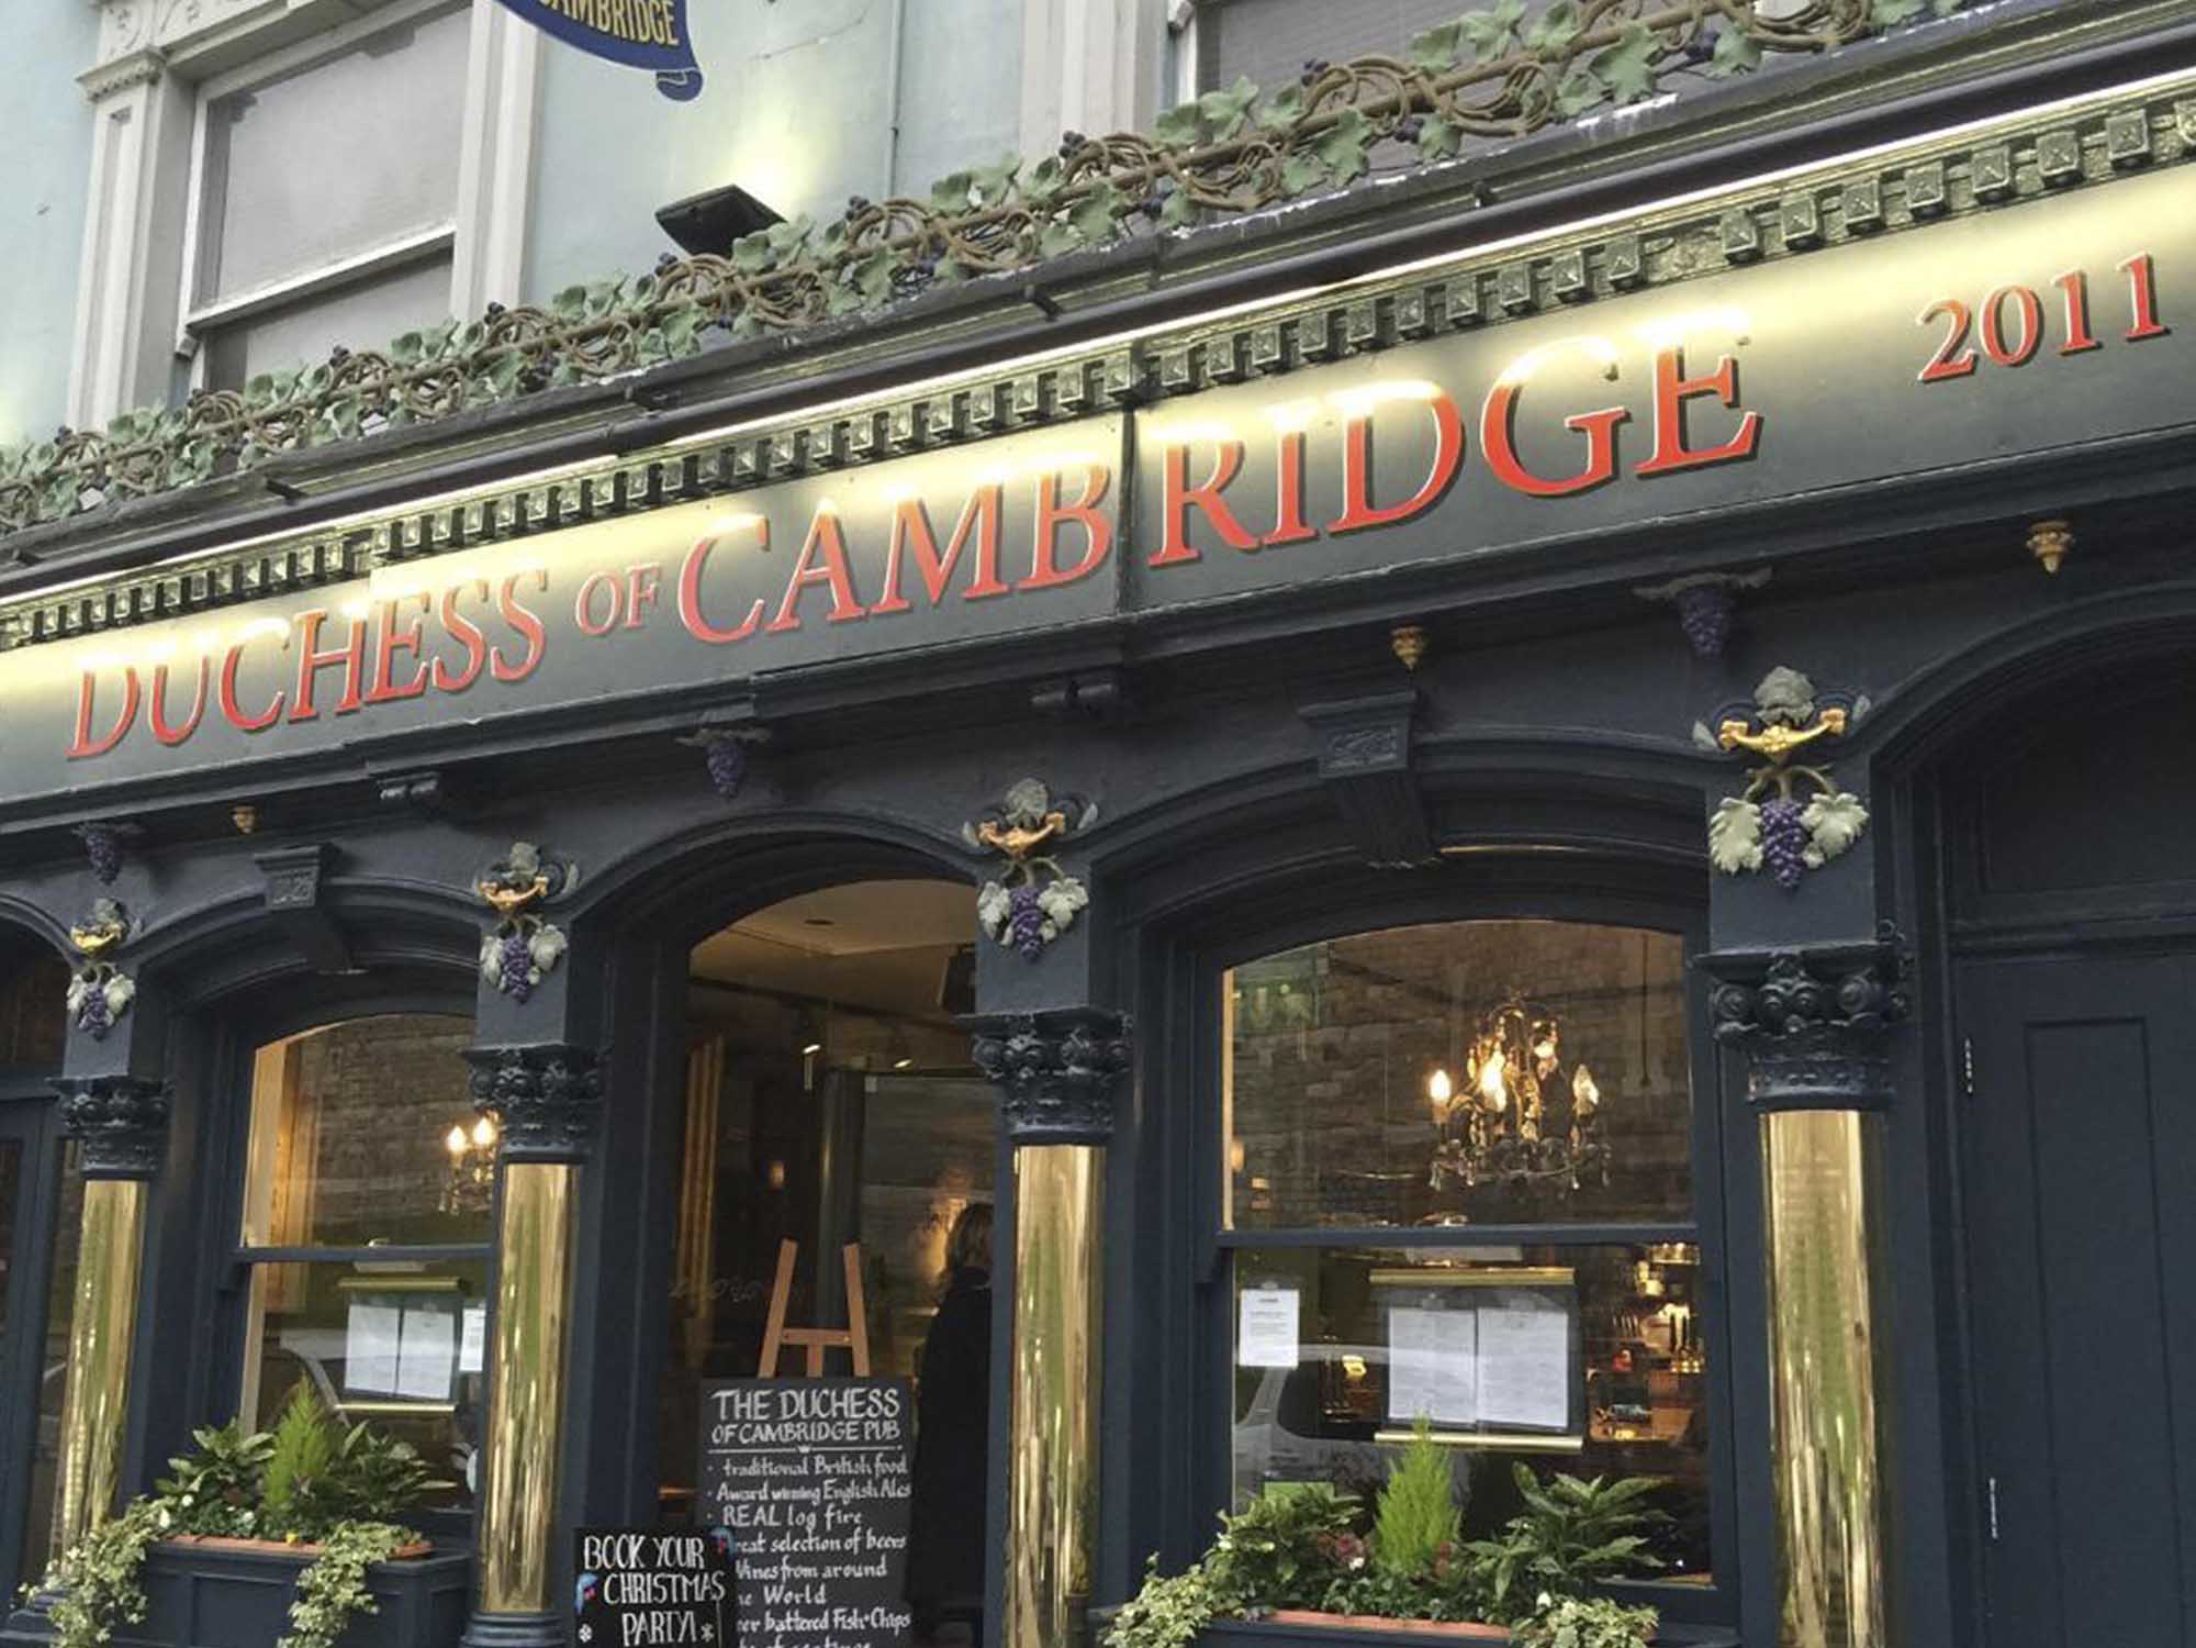 Best Pubs in Windsor - The Duchess of Cambridge